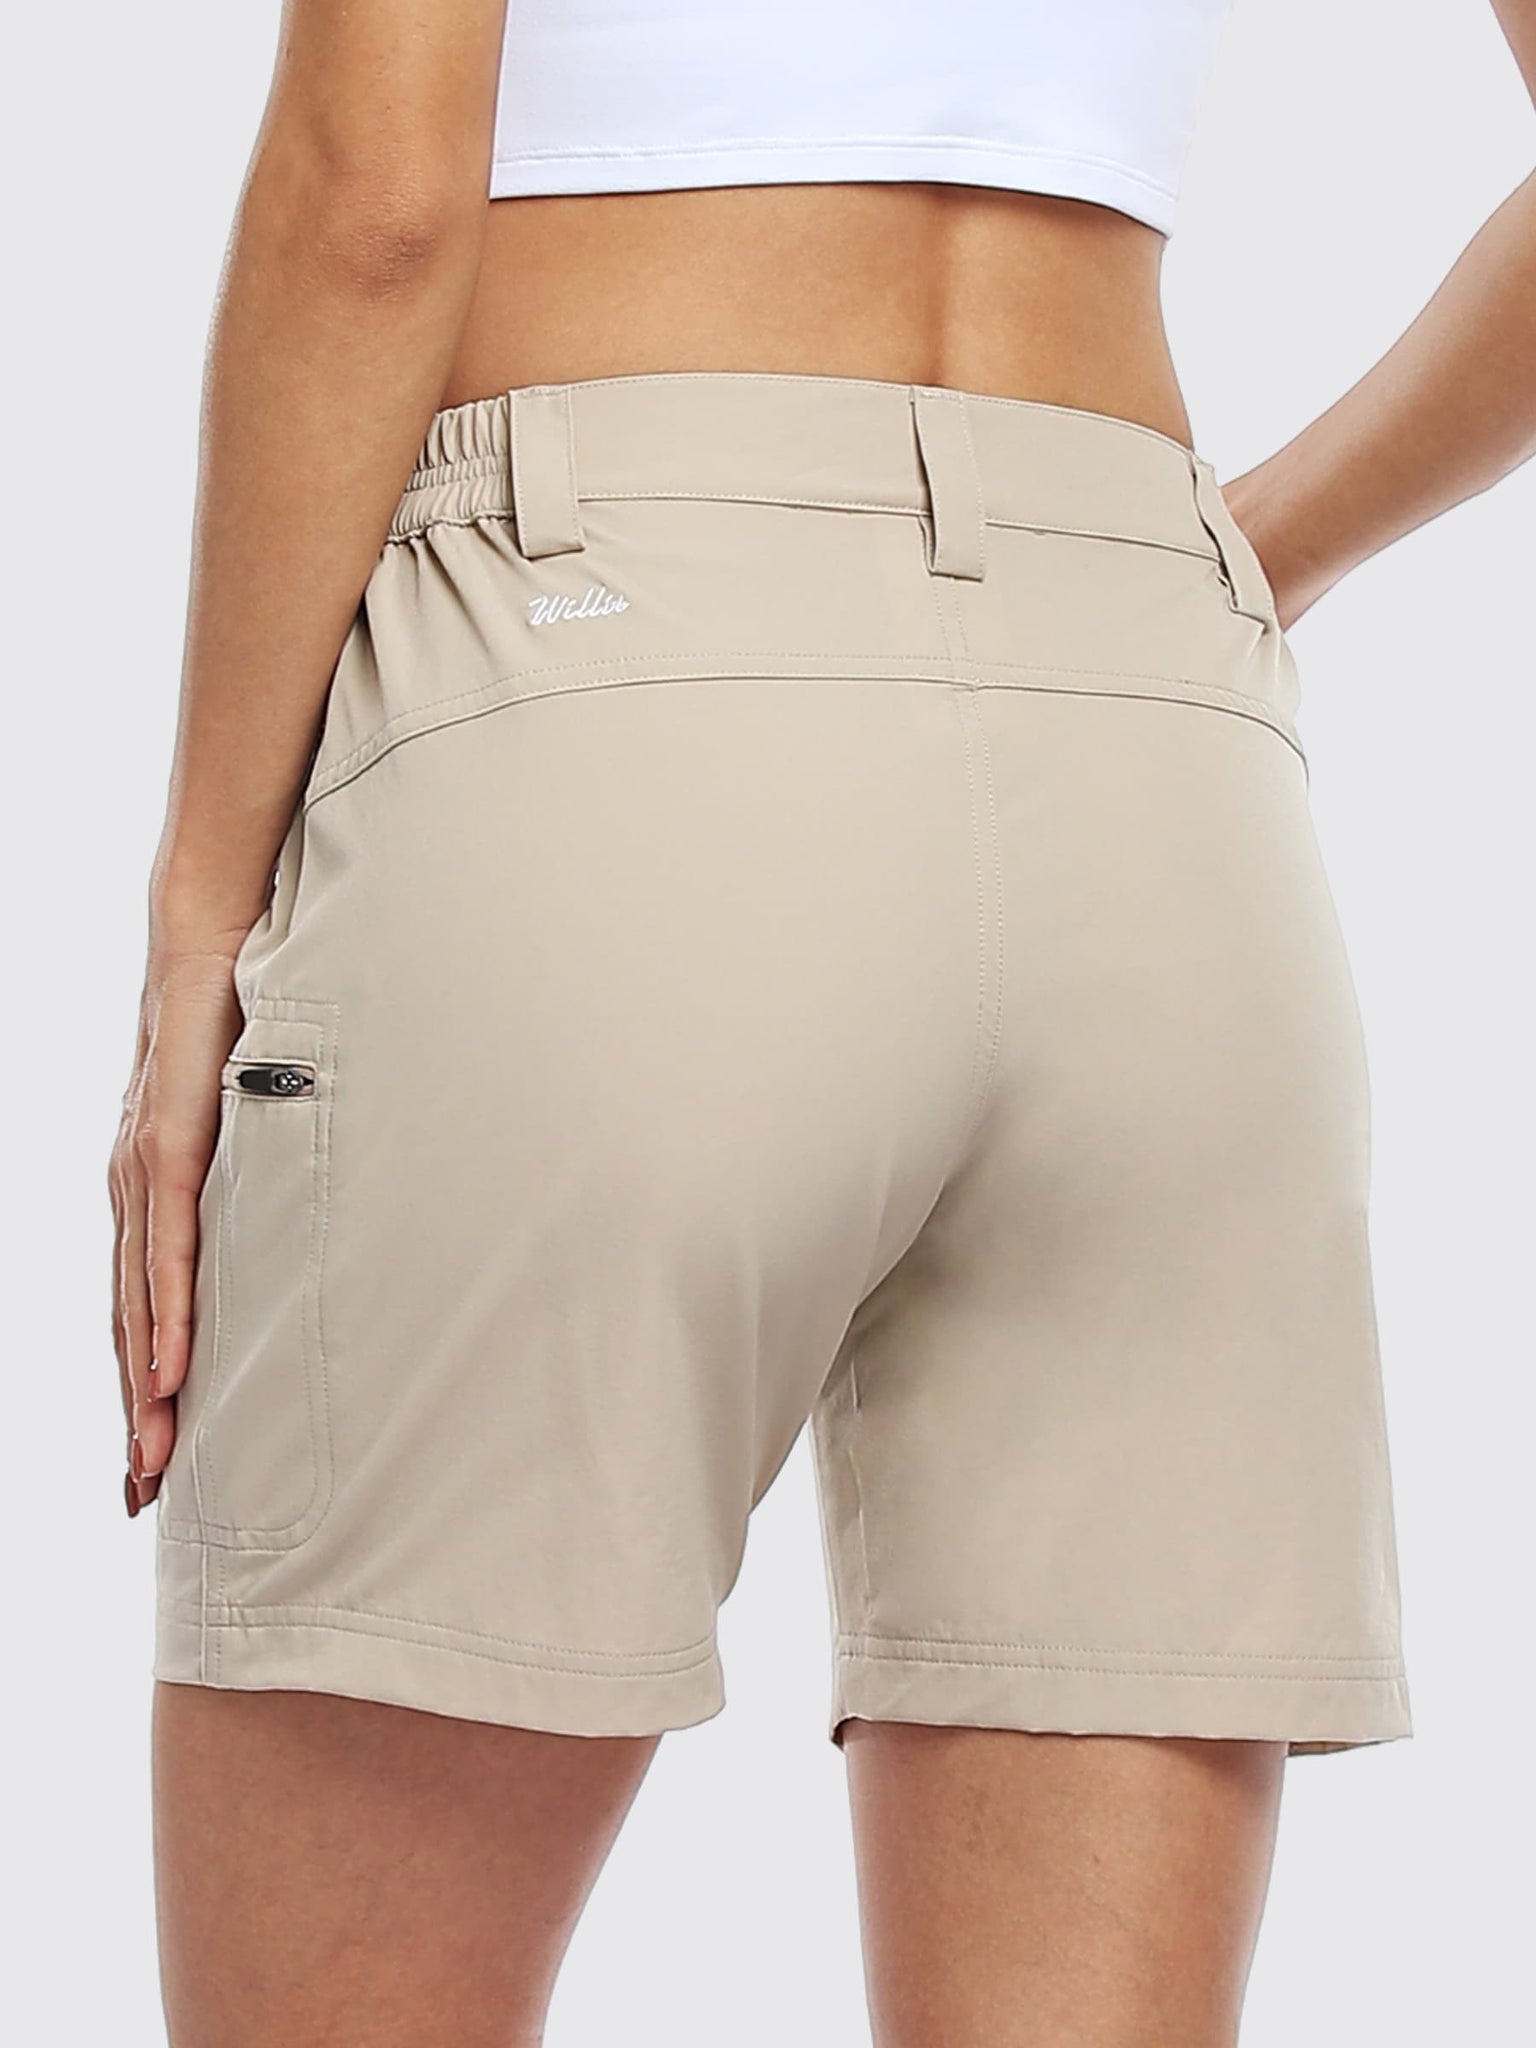 Willit Women's Outdoor Cargo Shorts 6 Inseam_Khaki_model5